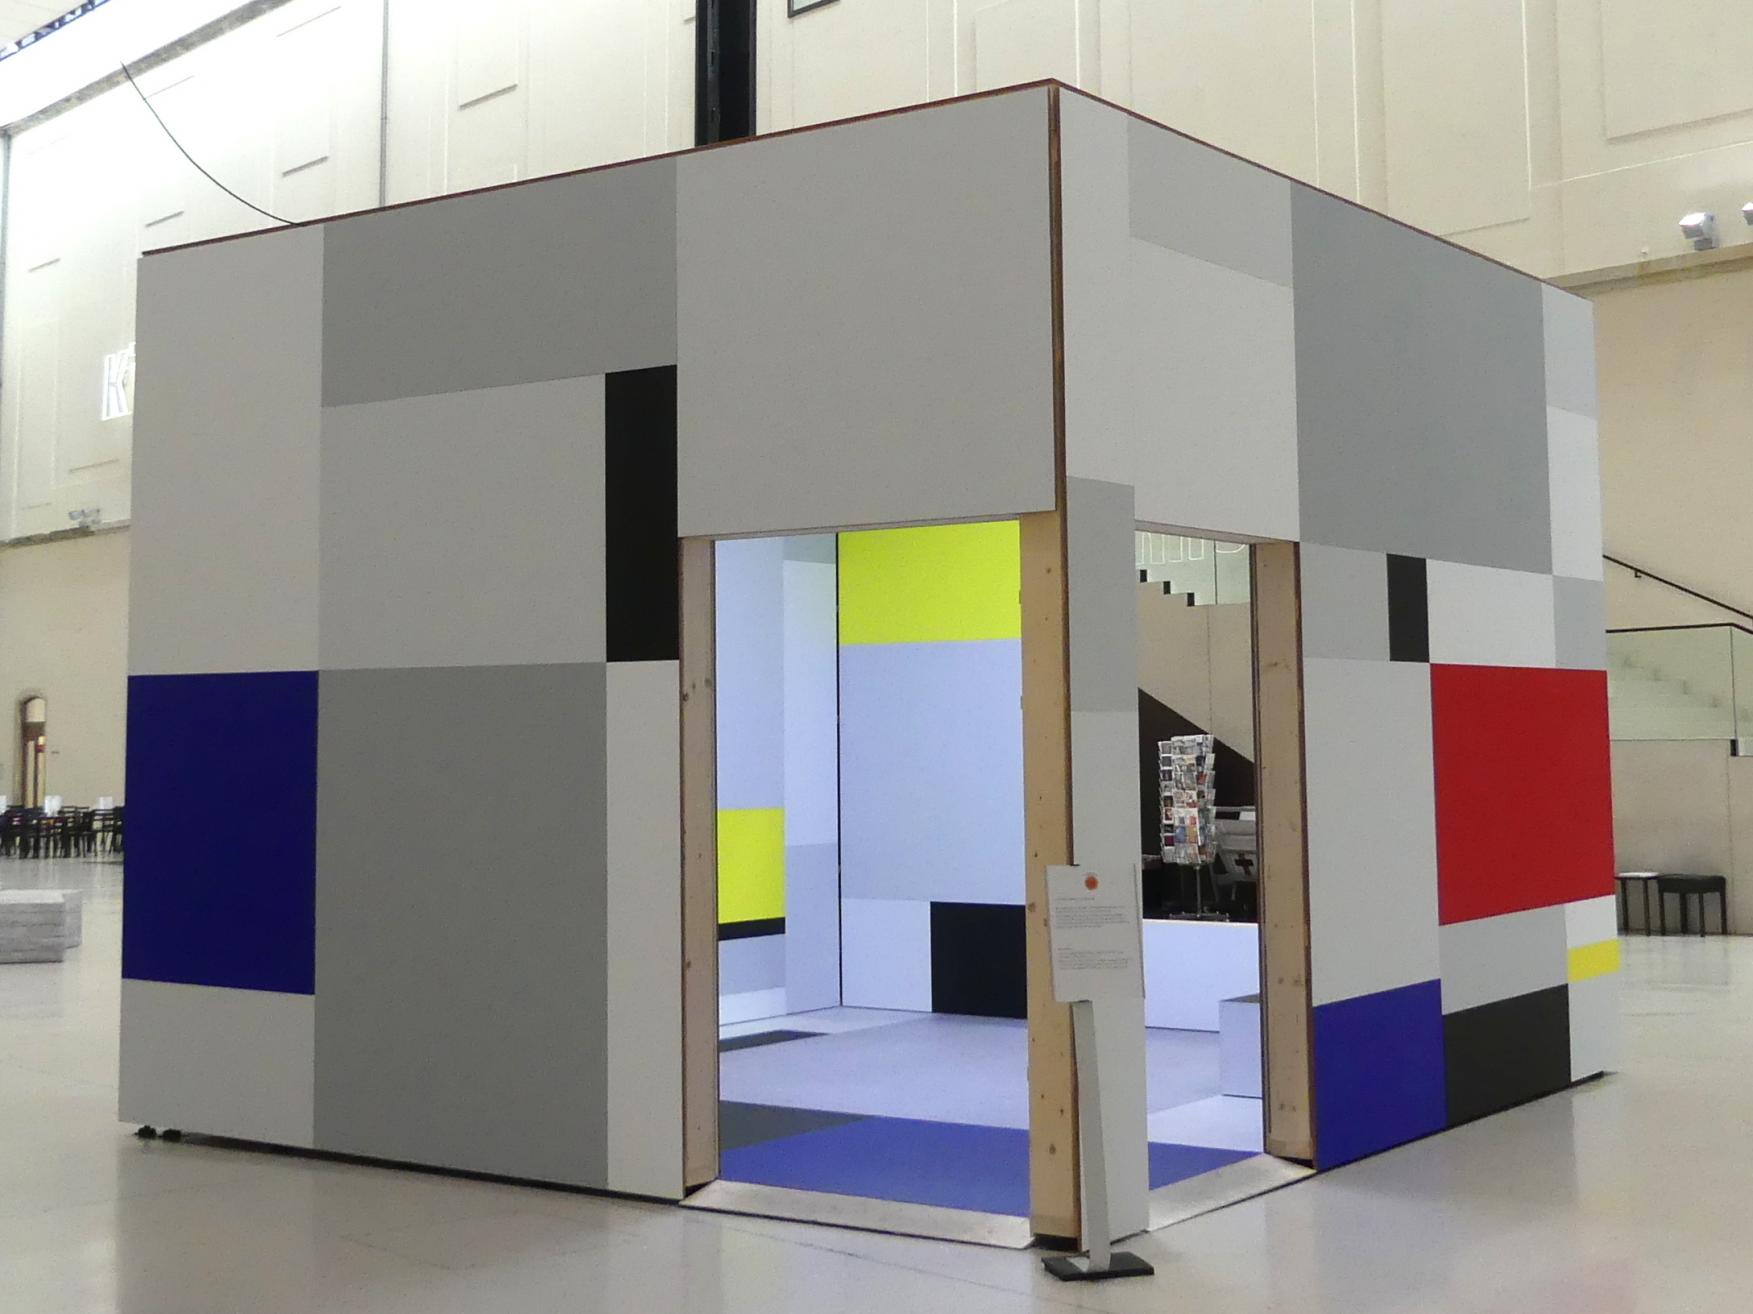 Heimo Zobernig (1994–2019), Piet Mondrian. Eine räumliche Aneignung, Dresden, Albertinum, Galerie Neue Meister, Erdgeschoss, Lichthof, 2019